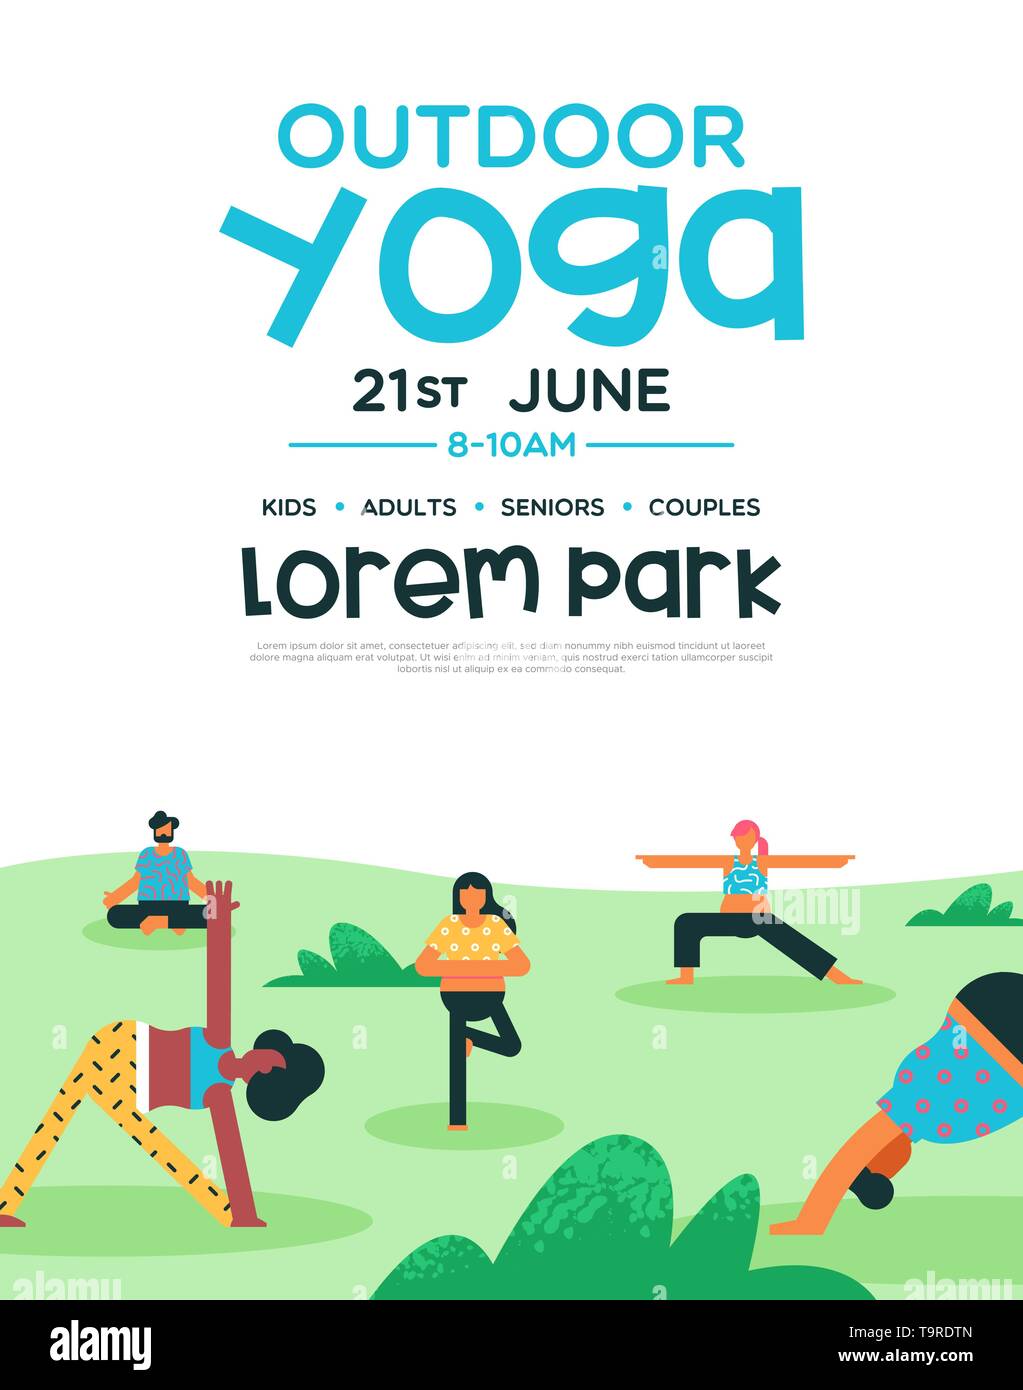 Outdoor yoga Flyer Vorlage für Gesundheit und Fitness Klasse oder eine besondere Veranstaltung. Menschen Gruppe Meditation im Park stellt. Stock Vektor